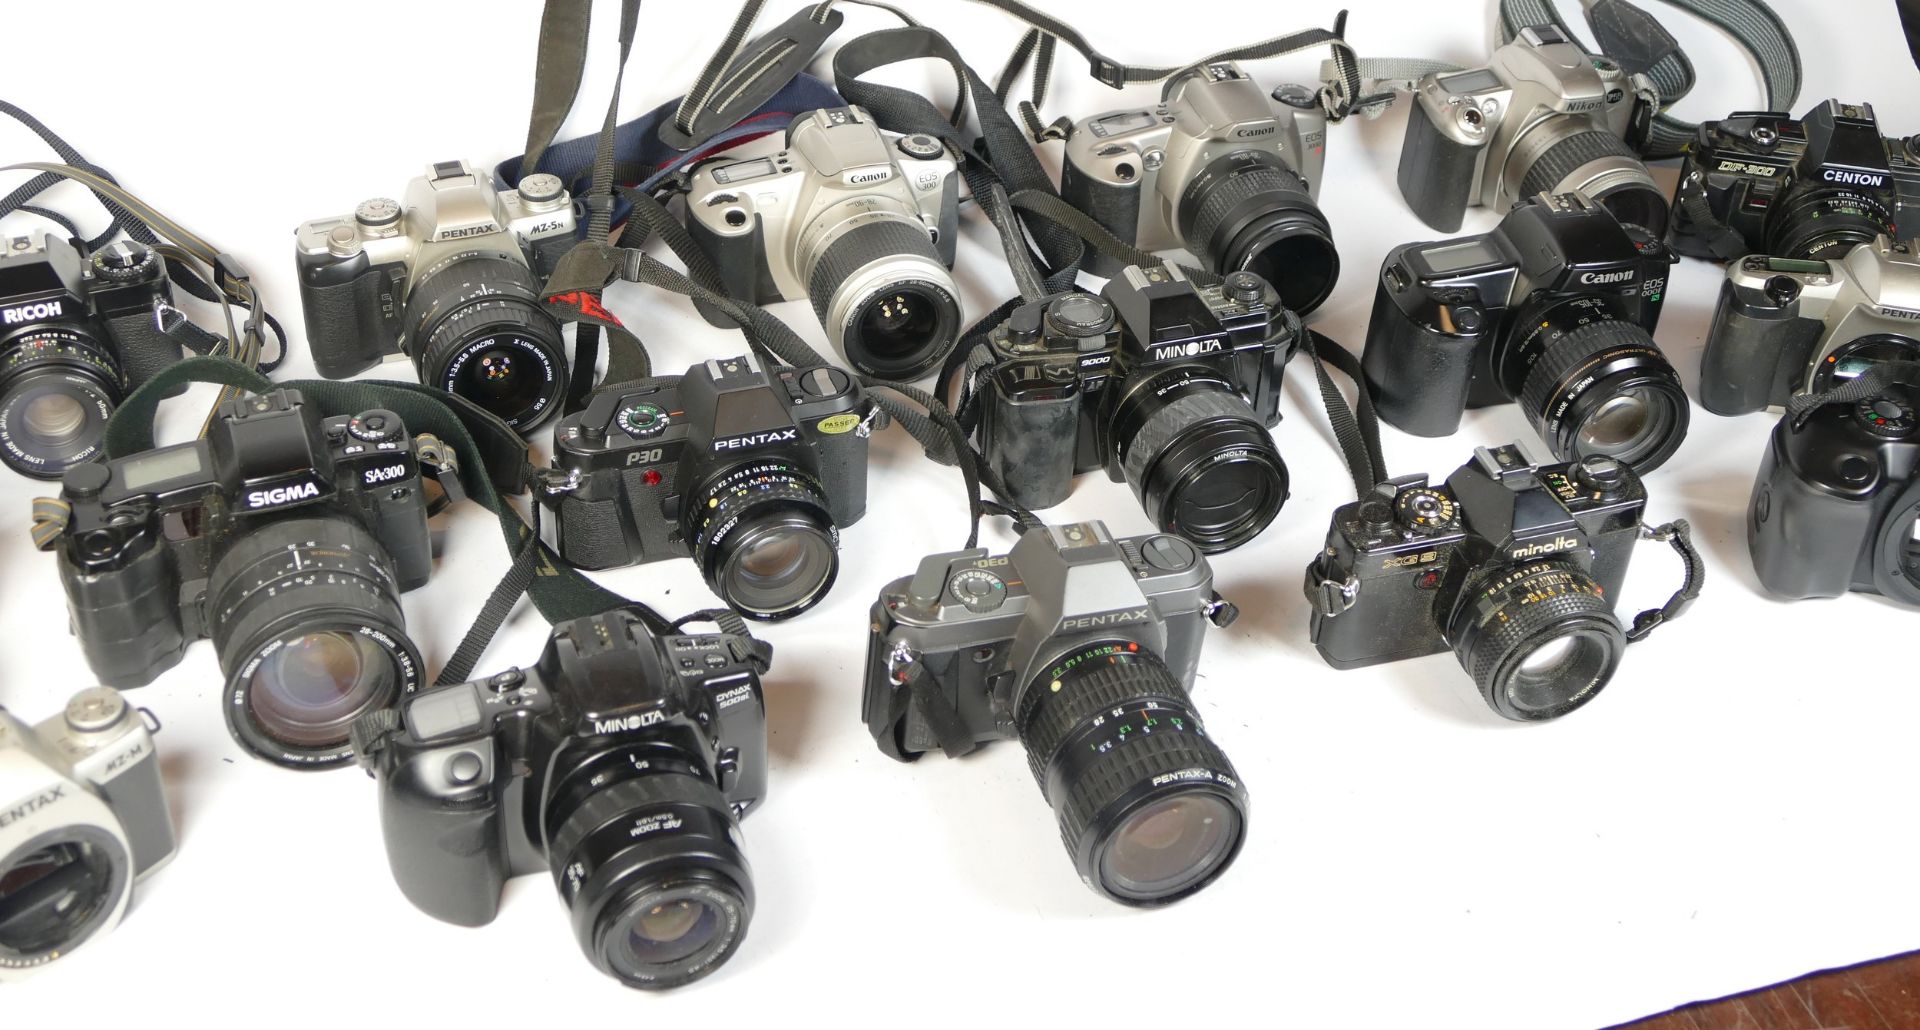 Twenty four SLR vintage film cameras to include a Pentax MZ-M, a Minolta 300si, a Carena 100sx and a - Image 2 of 2